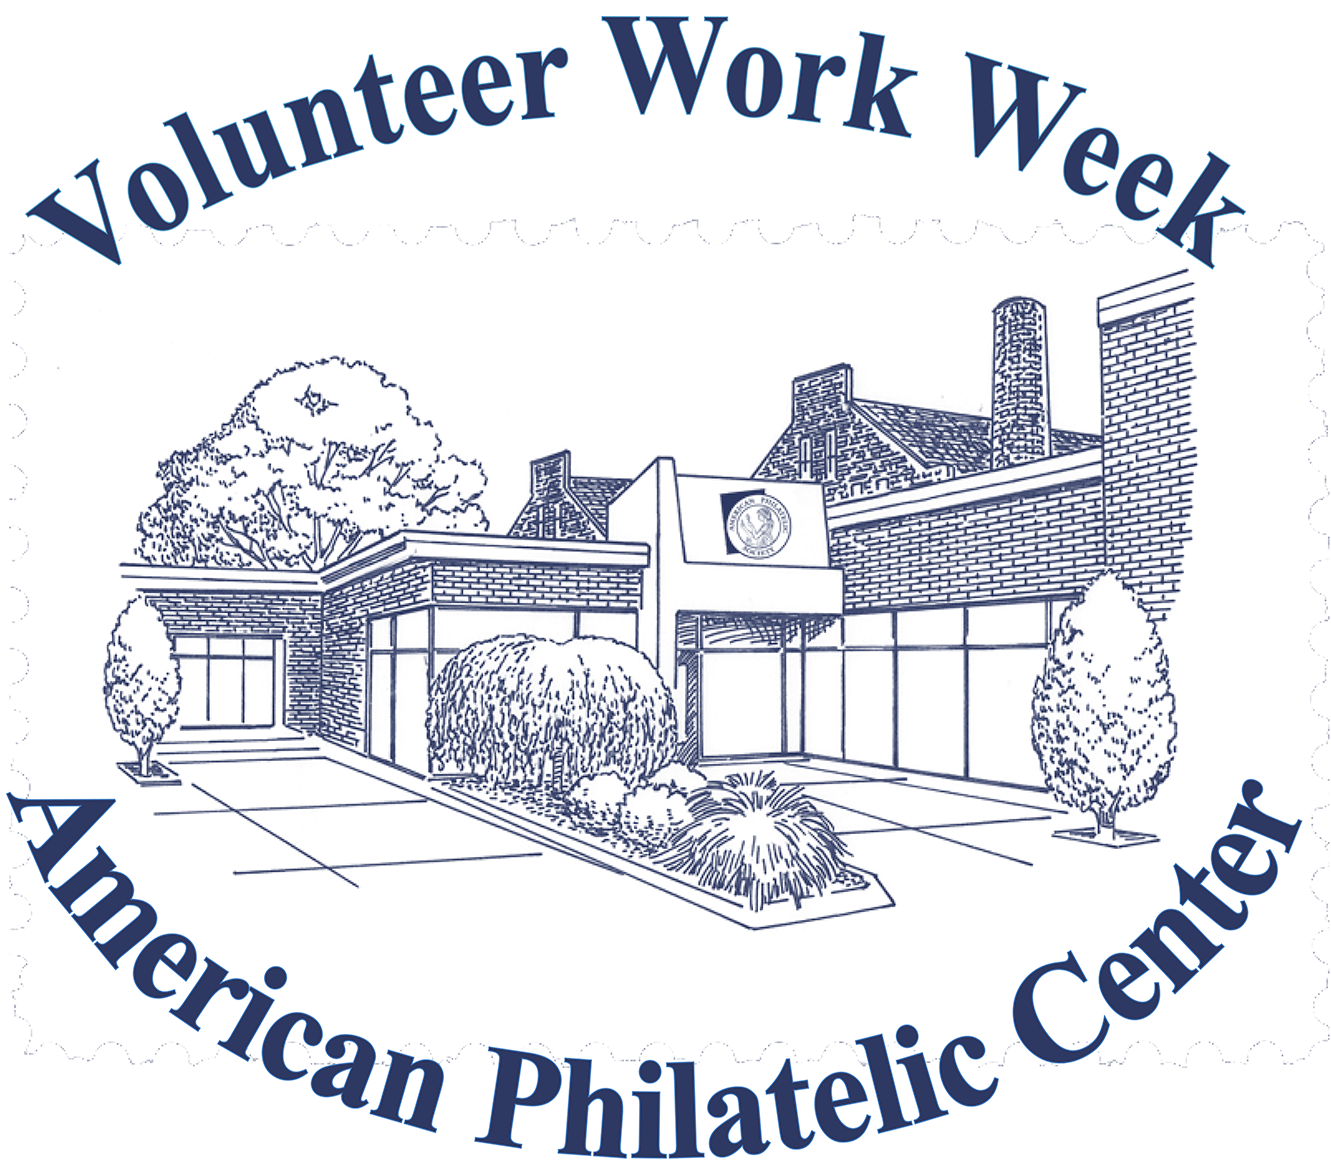 Volunteer Work Week Logo